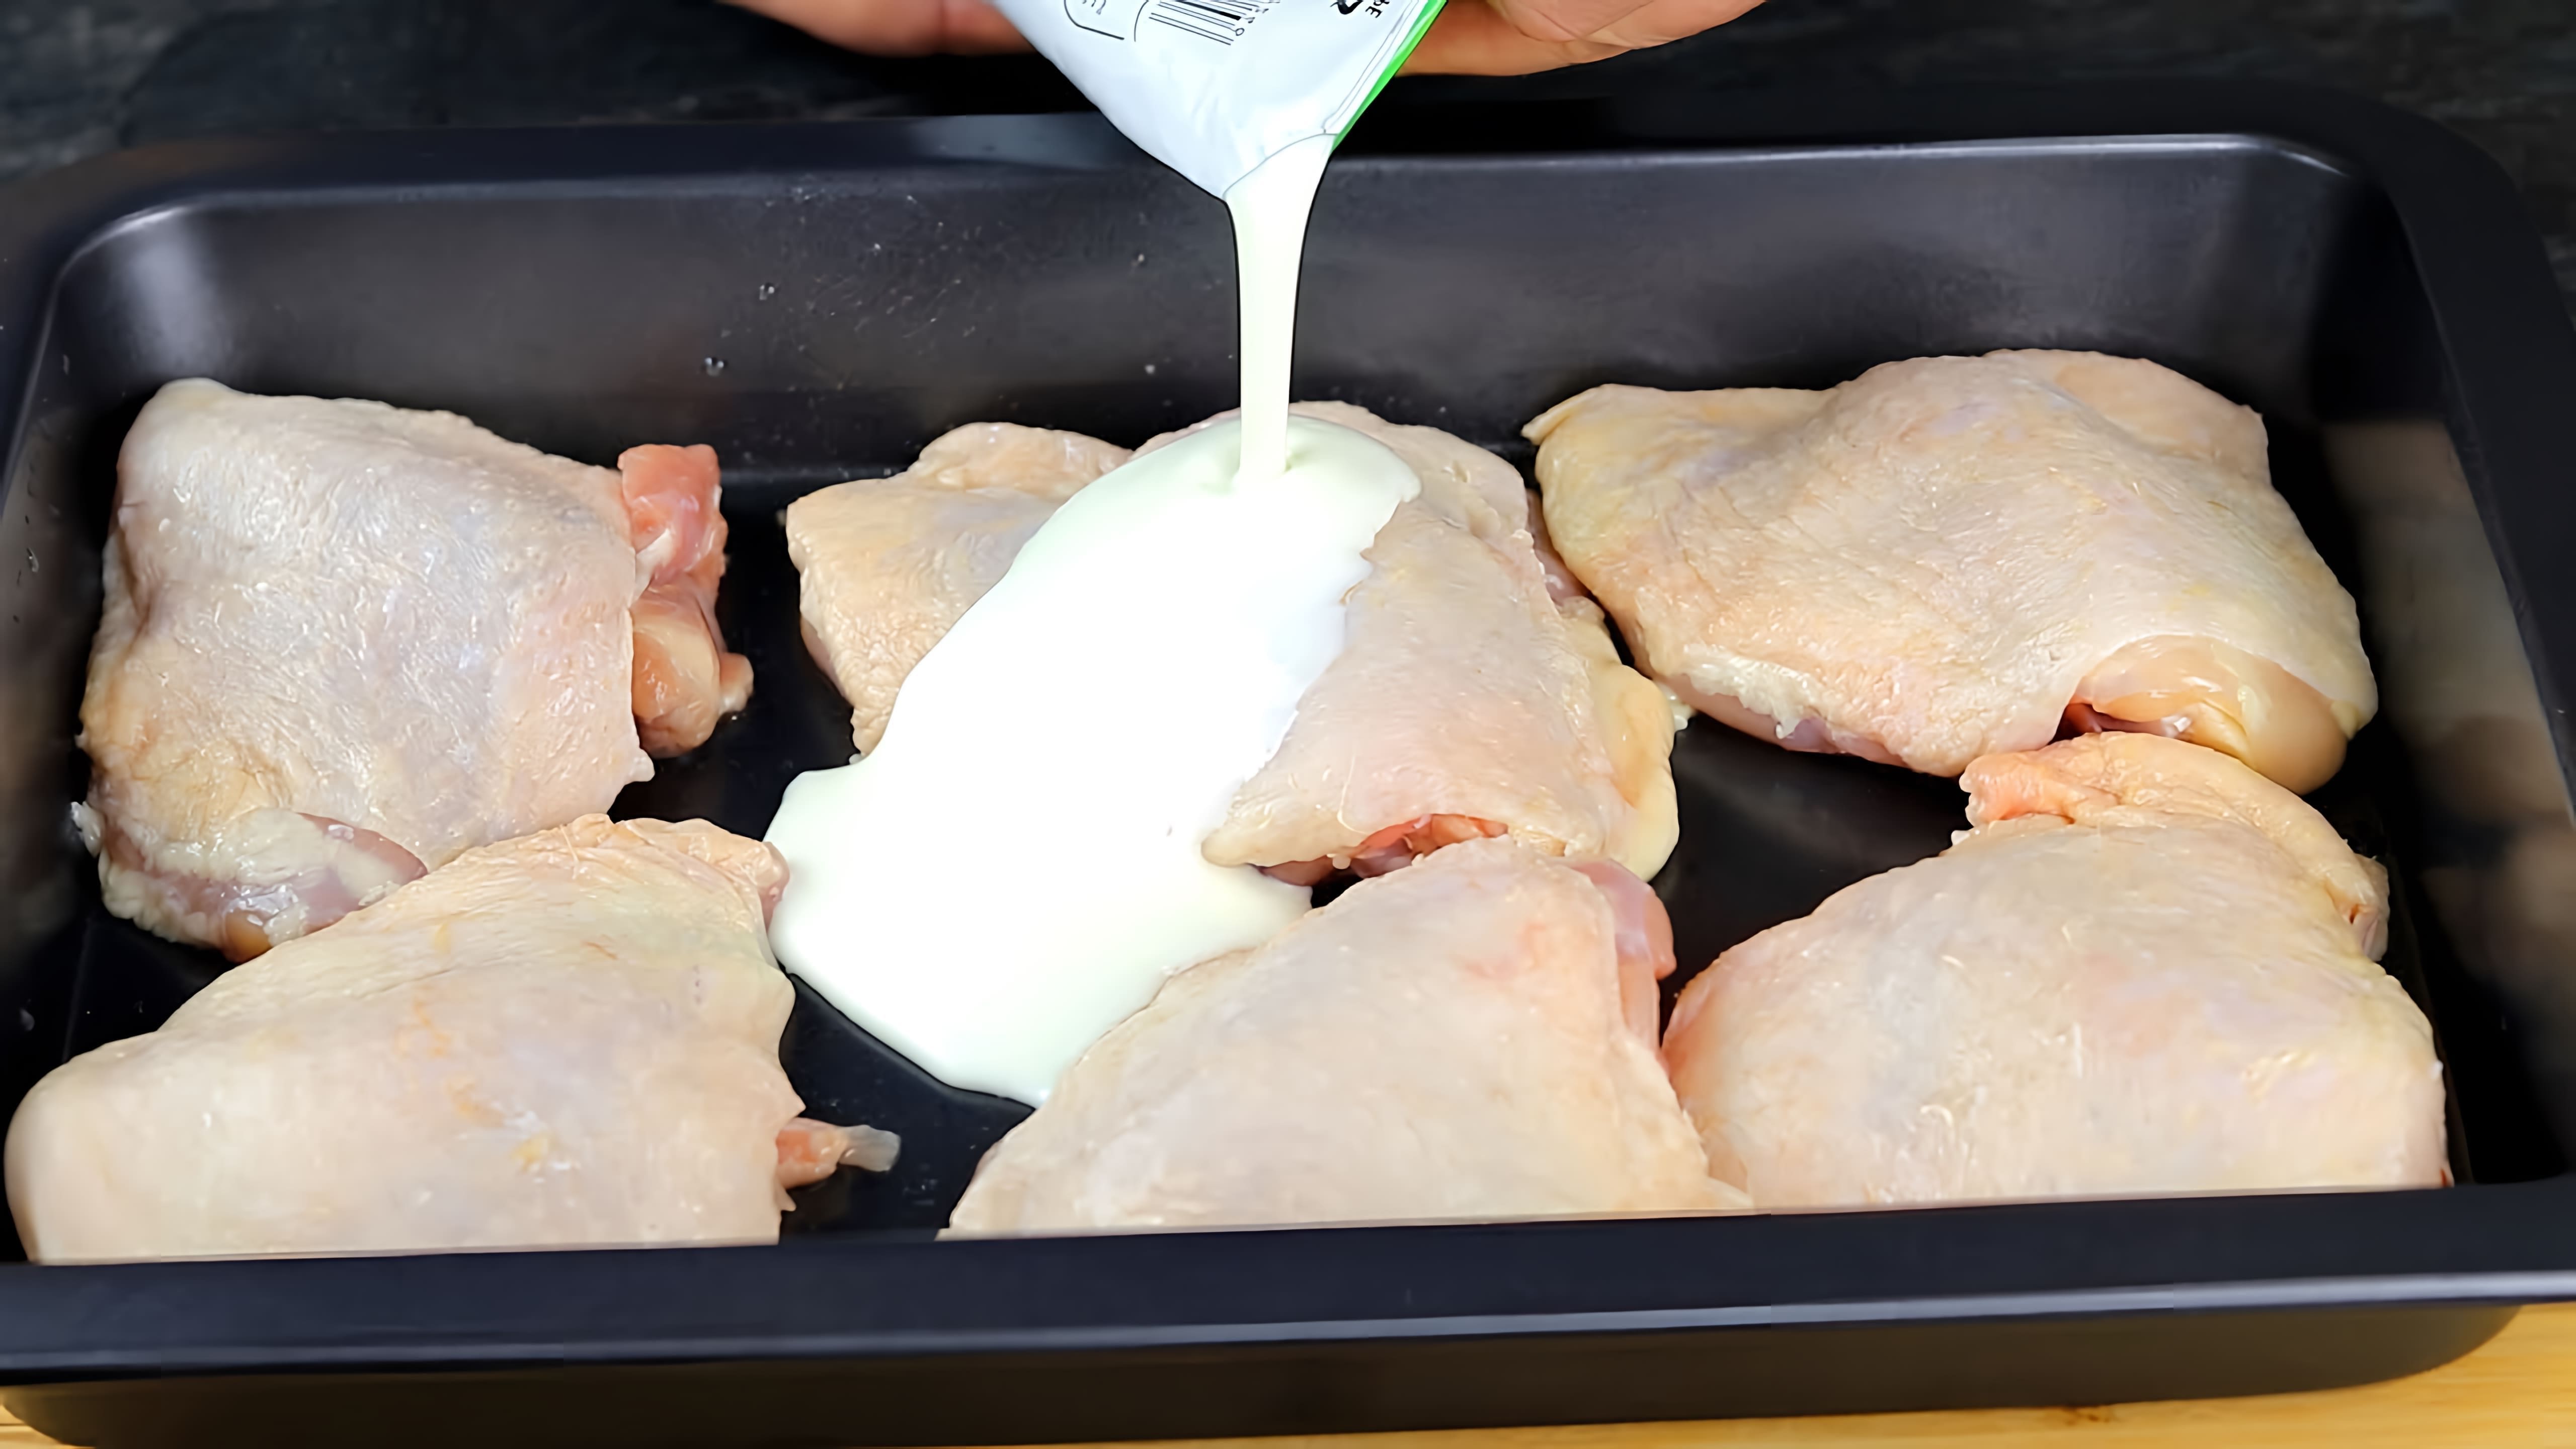 В этом видео-ролике вы увидите рецепт приготовления вкусного второго блюда из курицы, которое можно приготовить дома